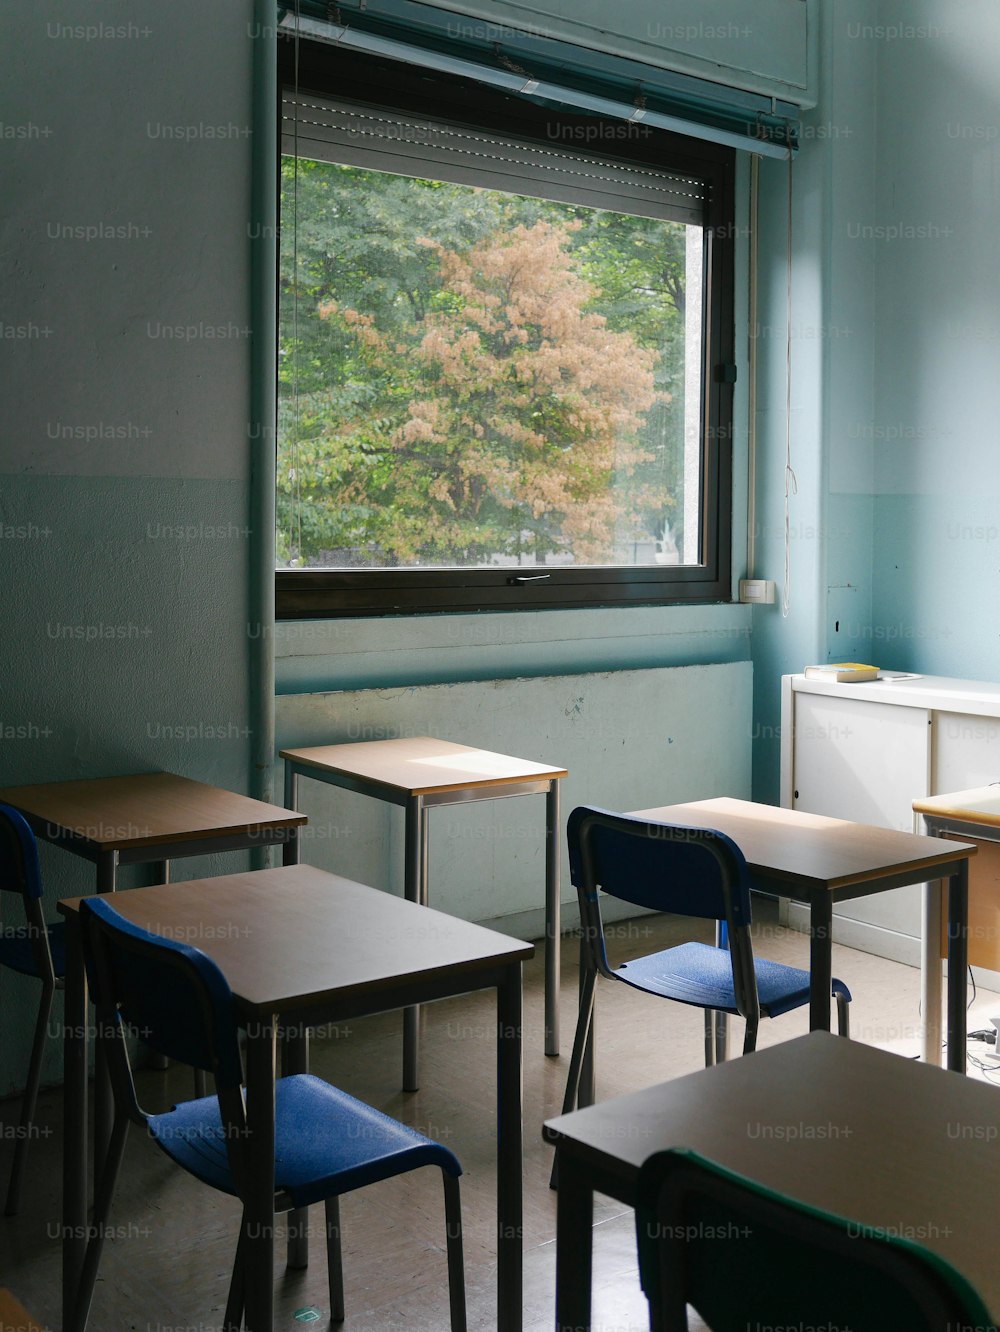 uma sala de aula com carteiras, cadeiras e uma janela